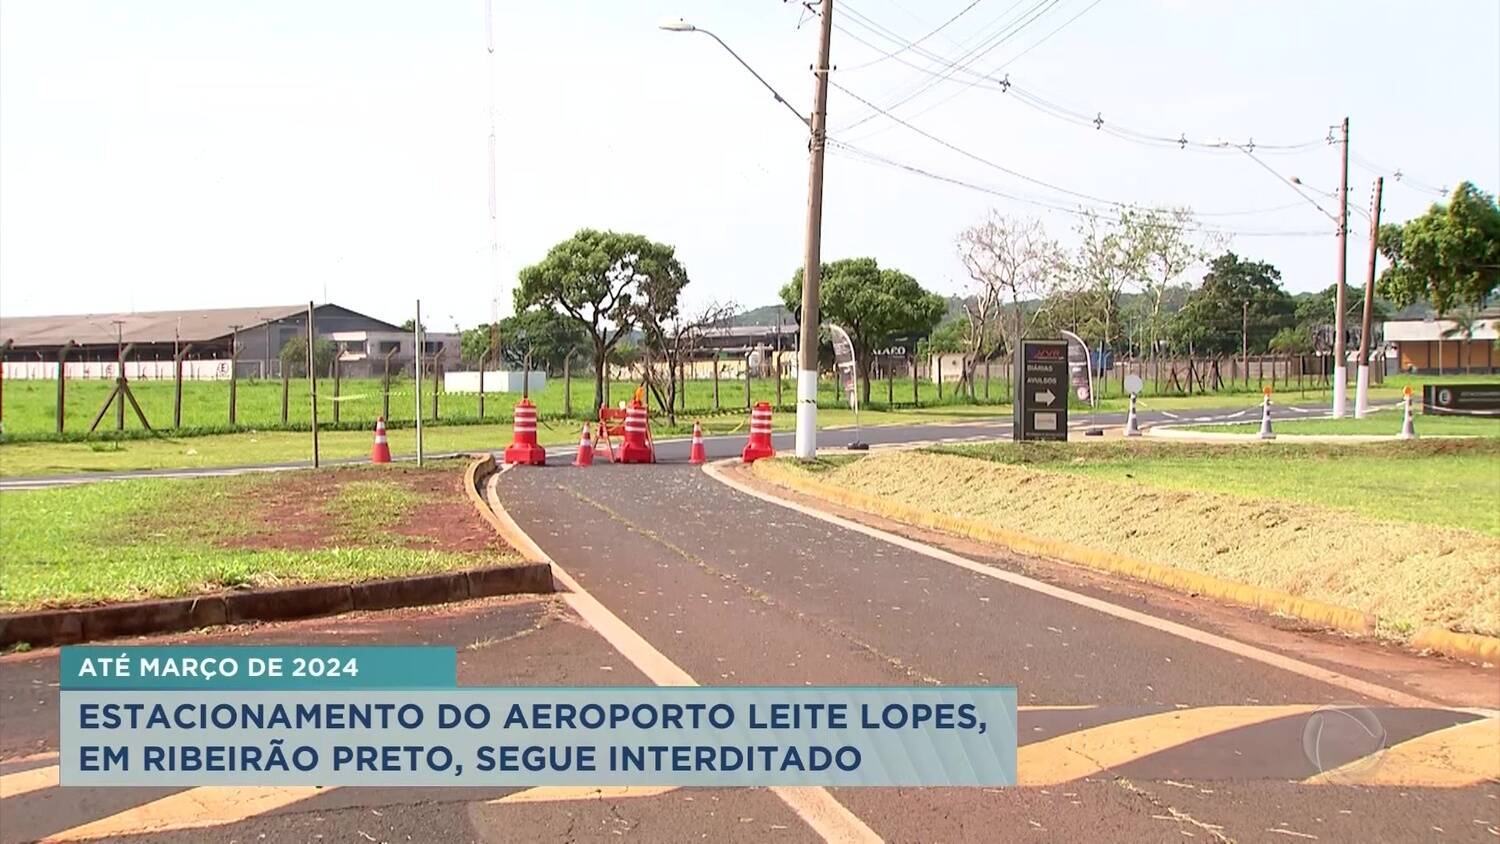 Estacionamento do Aeroporto Leite Lopes segue interditado até 2024, em Ribeirão Preto - RecordTV Interior SP